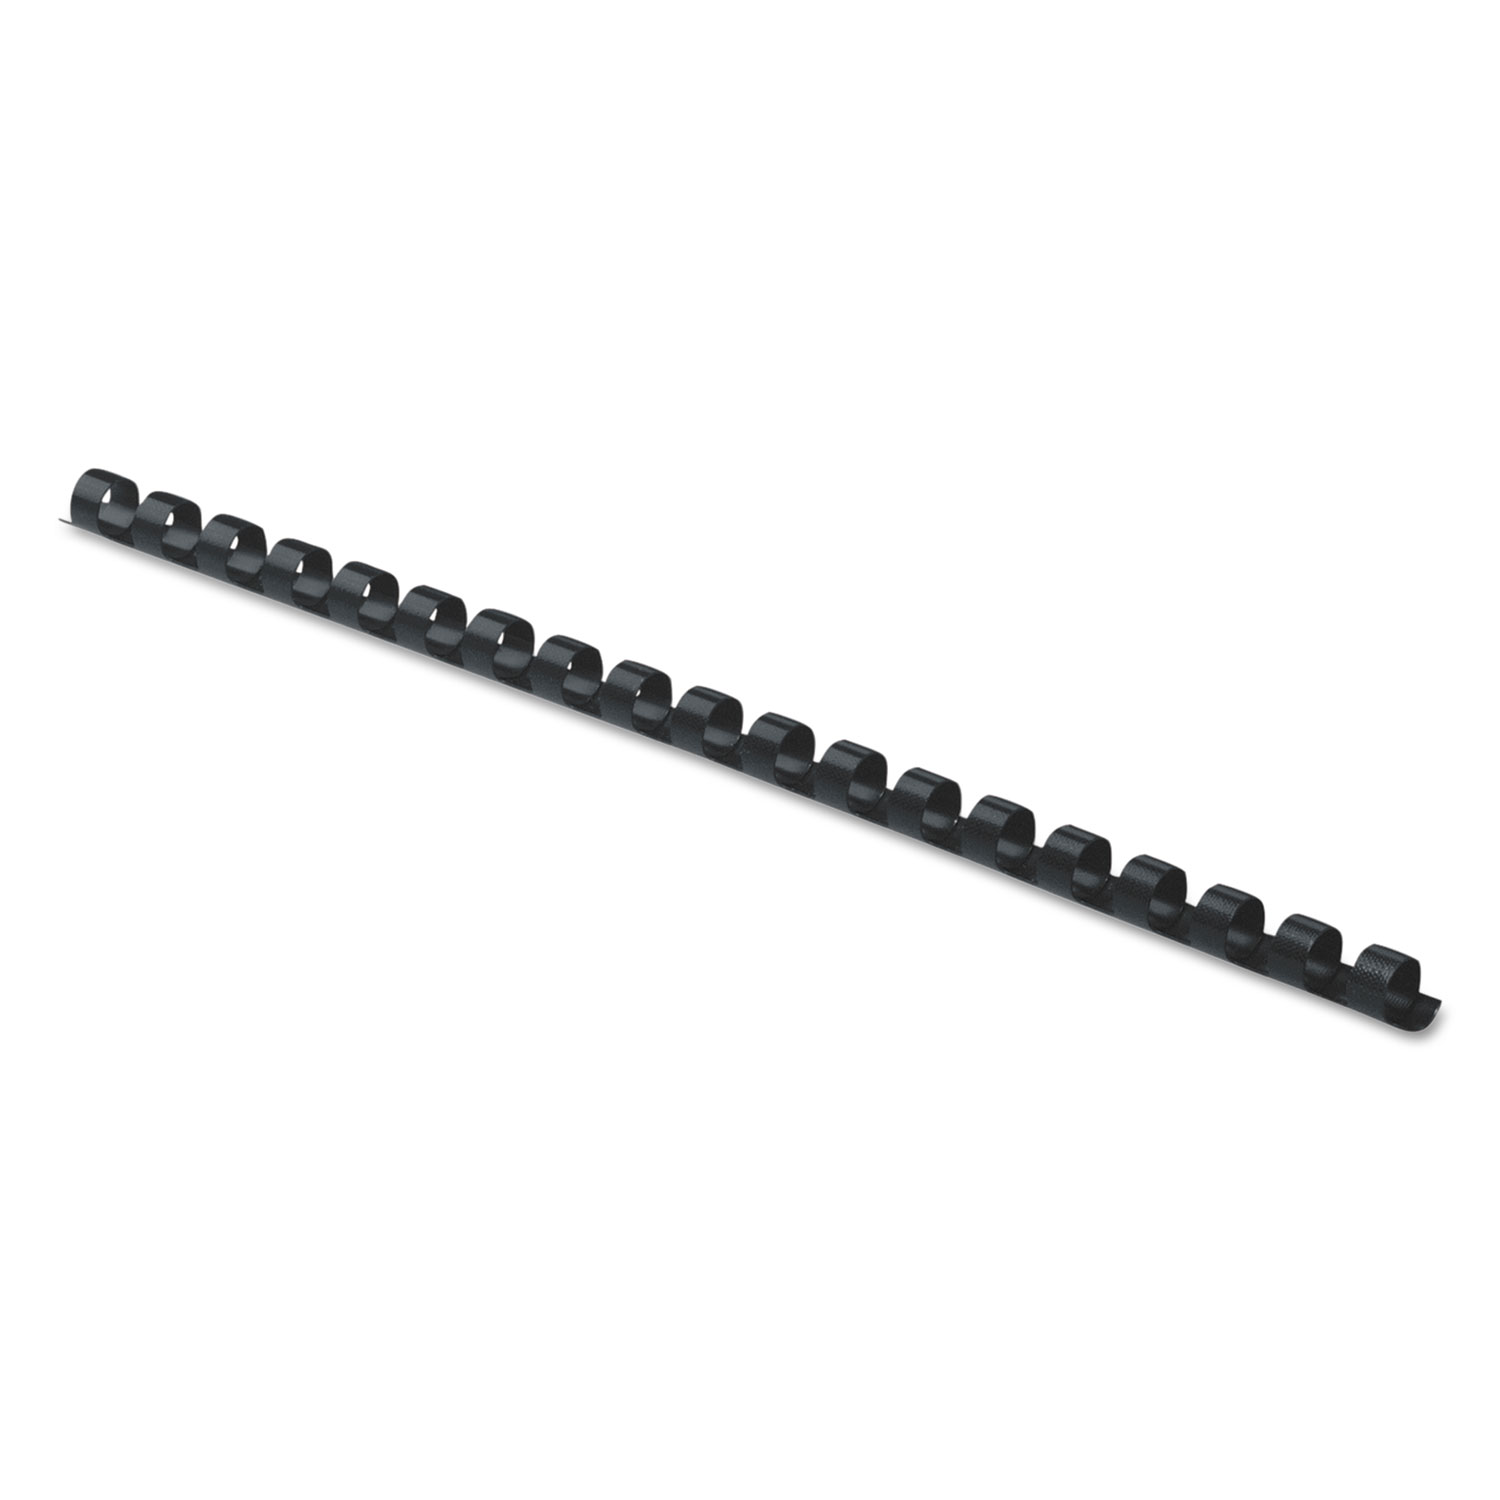 Plastic Comb Bindings, 5/16" Diameter, 40 Sheet Capacity, Black, 100 Combs/Pack